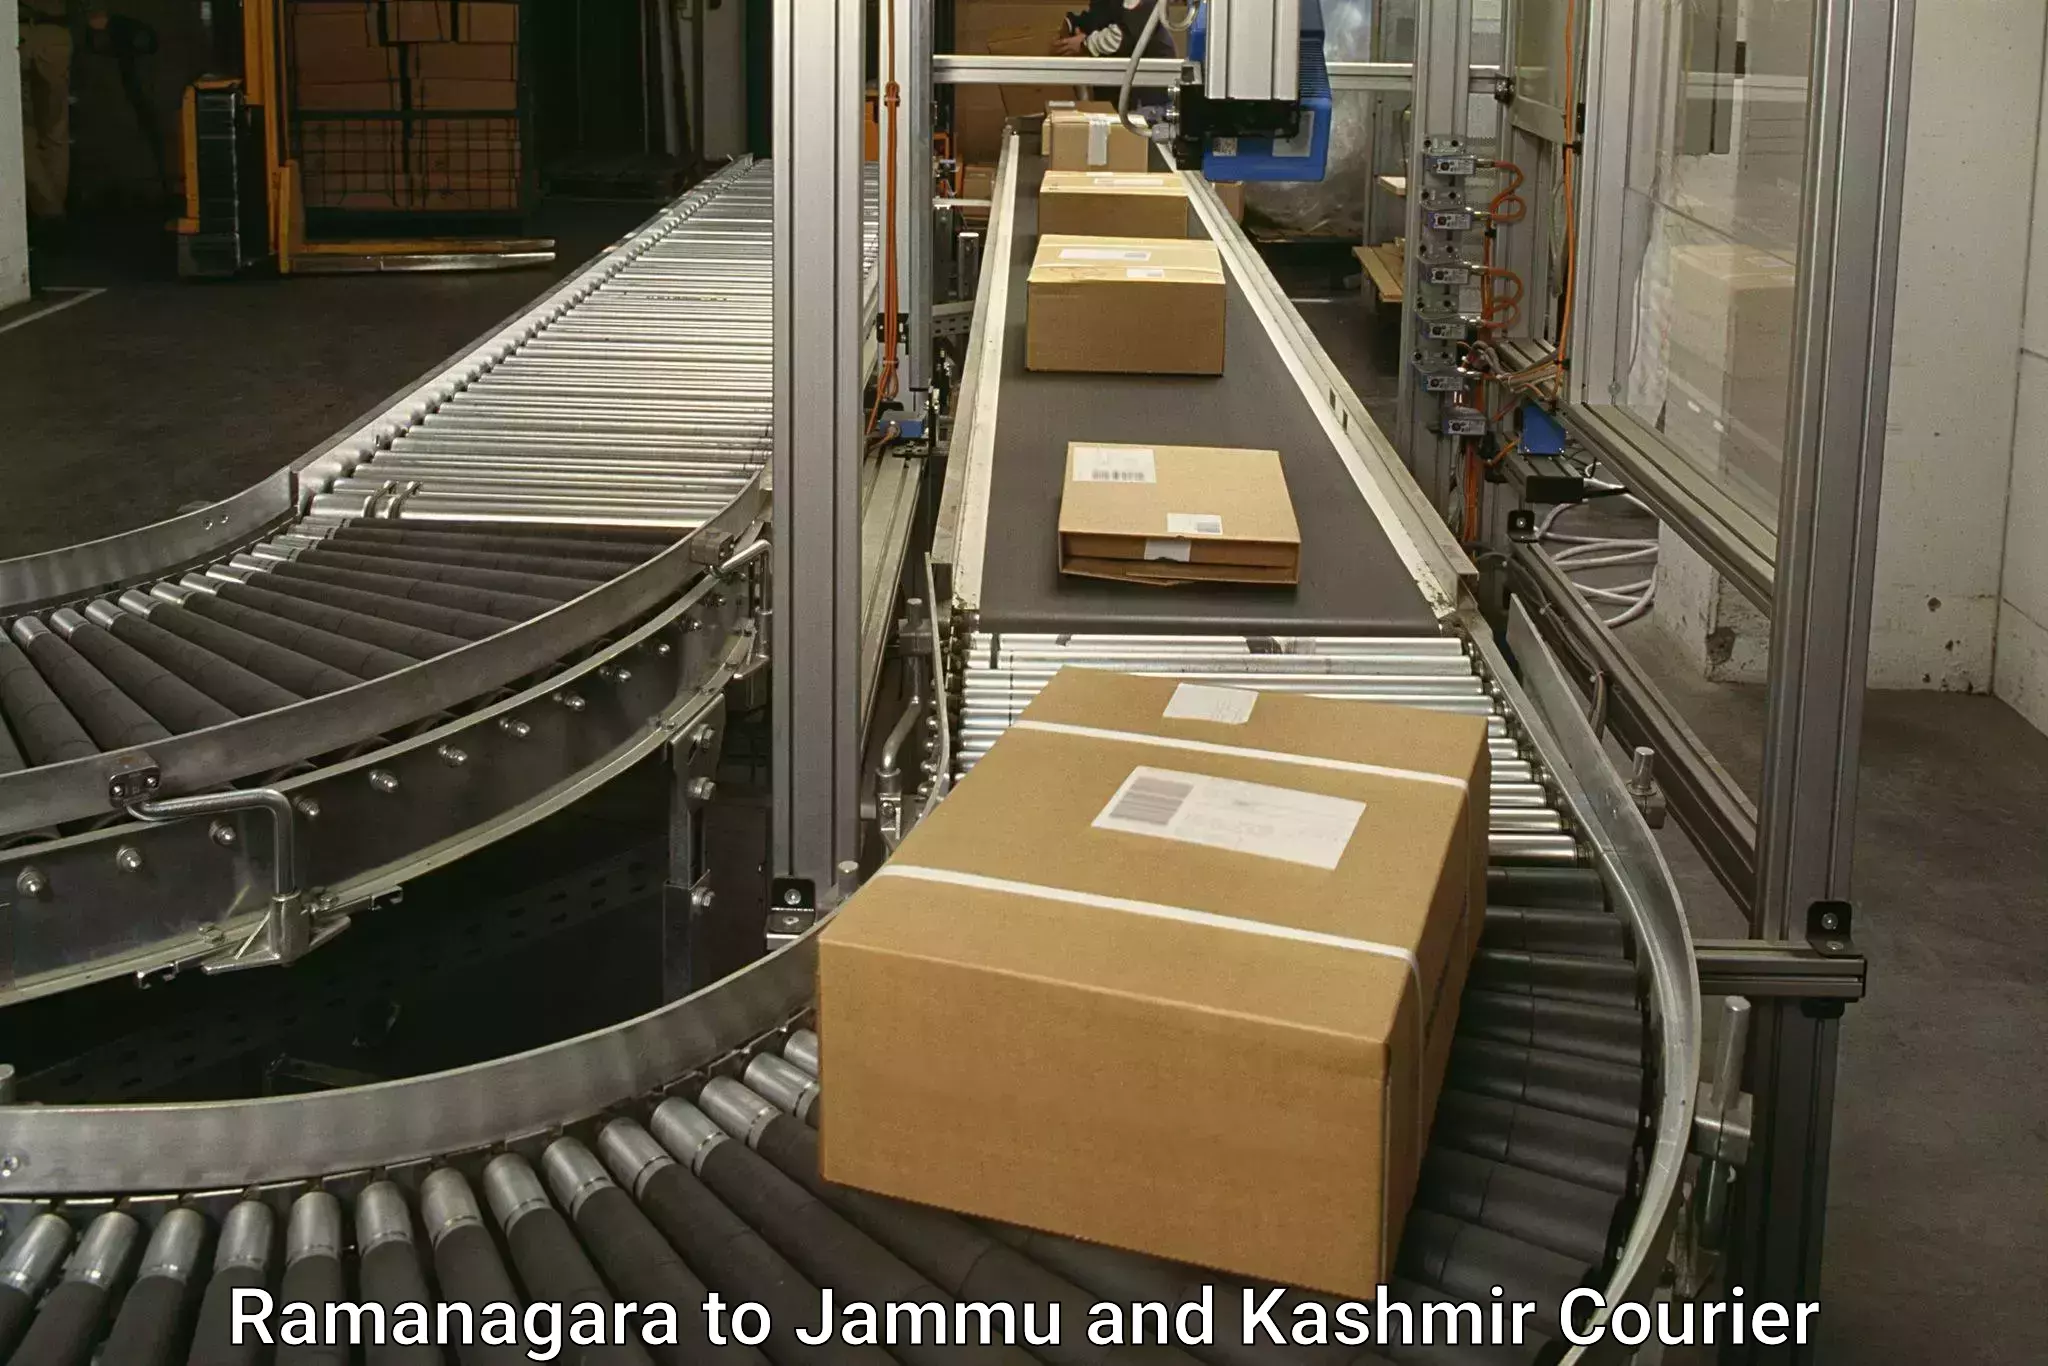 Delivery service partnership Ramanagara to Jammu and Kashmir